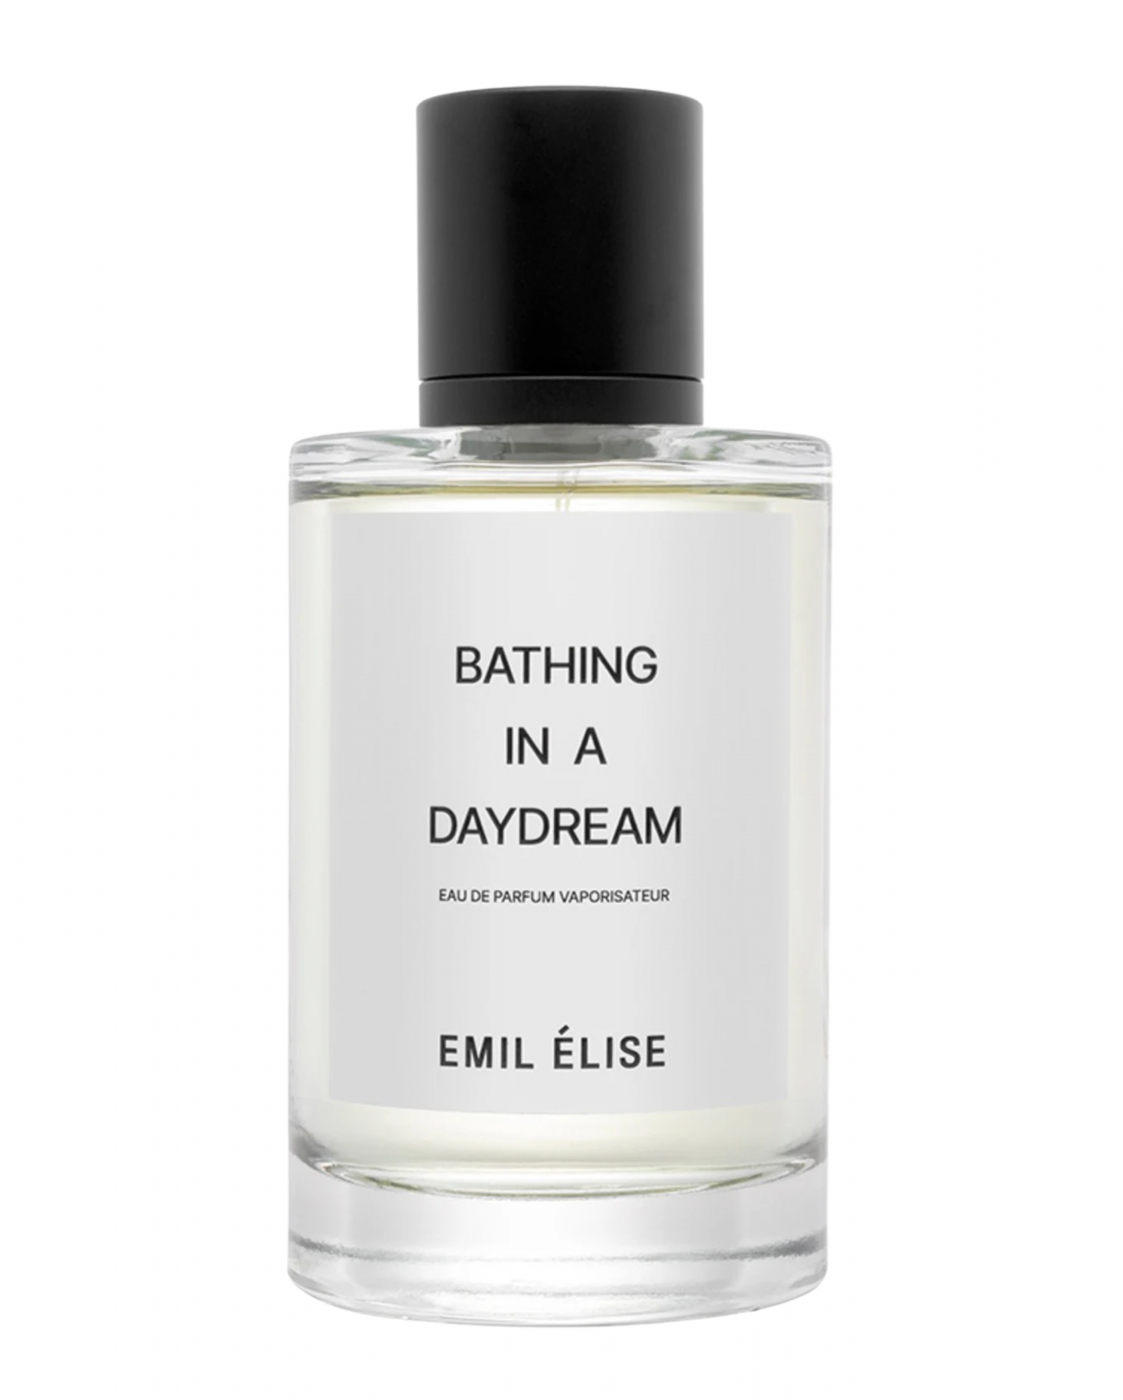 Bathing in a Daydream, Emil Elise